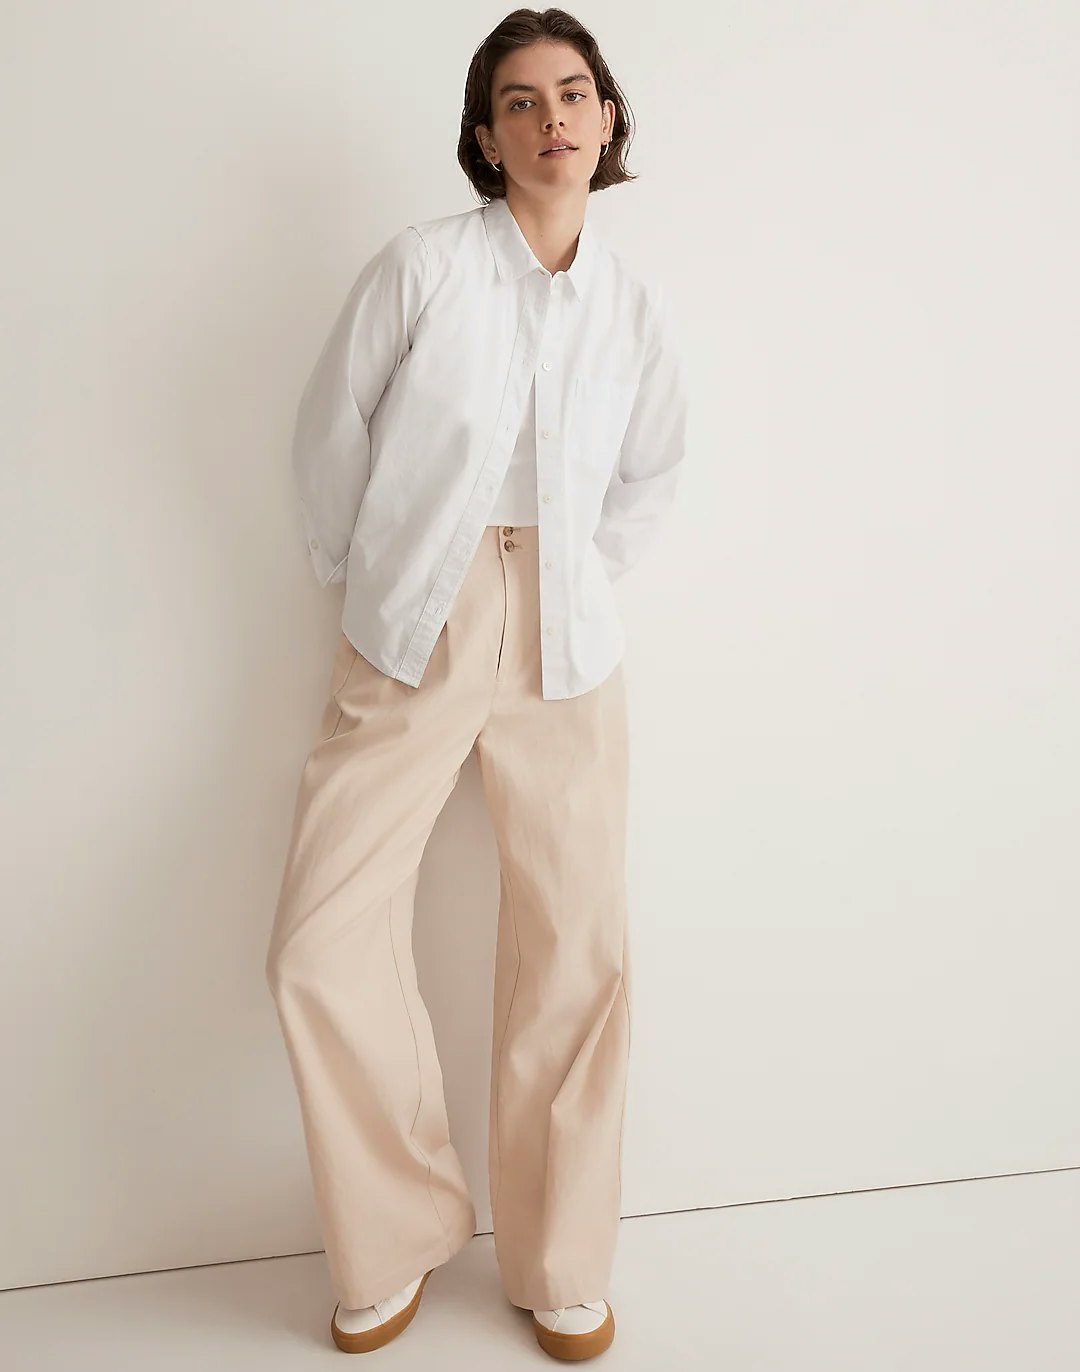 Petite Studio's Reign Wool Pants in Oatmeal - Women's Fashion